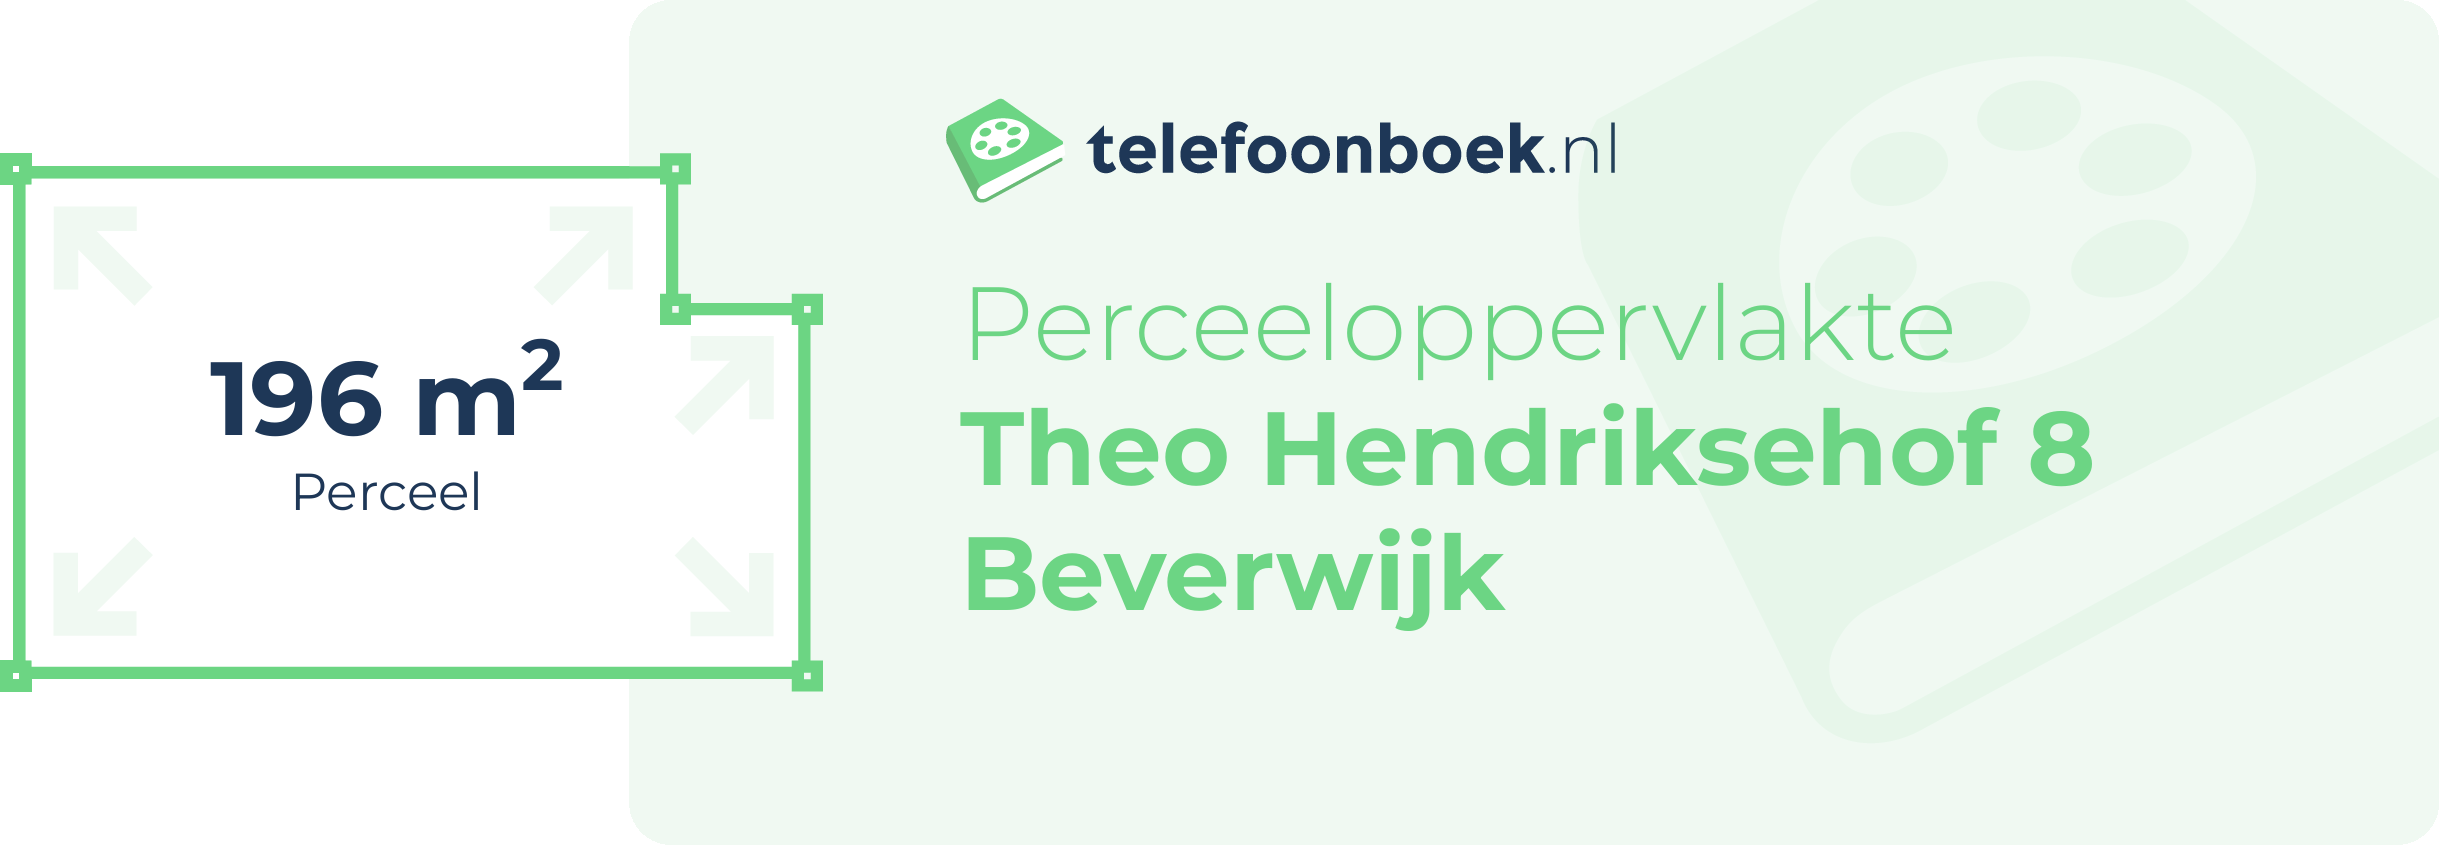 Perceeloppervlakte Theo Hendriksehof 8 Beverwijk